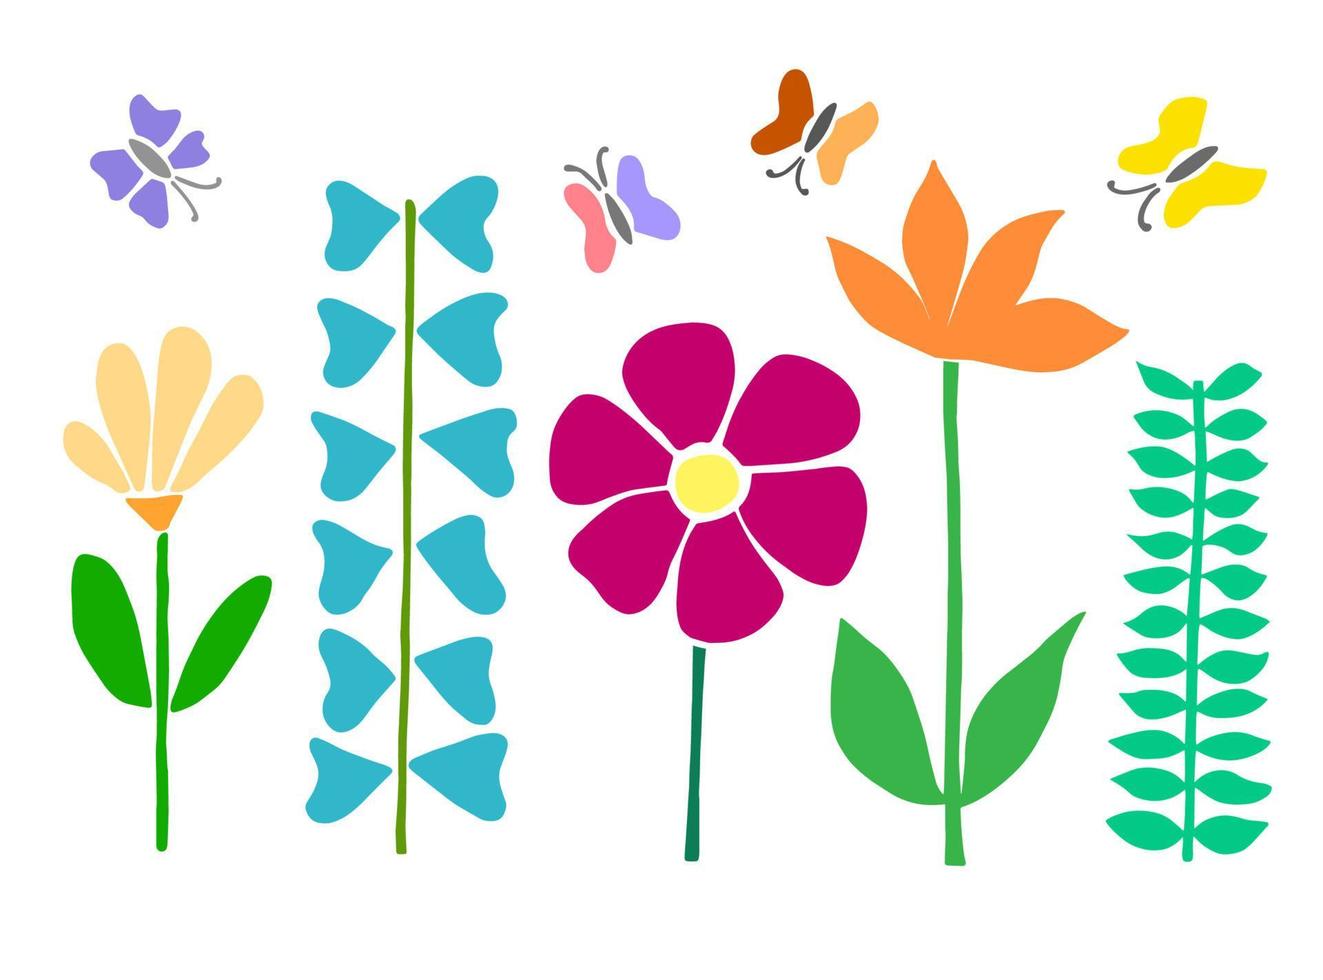 kleurrijke illustratie van bloemen en vlinders. met de hand getekend in trendy eenvoudige stijl vector